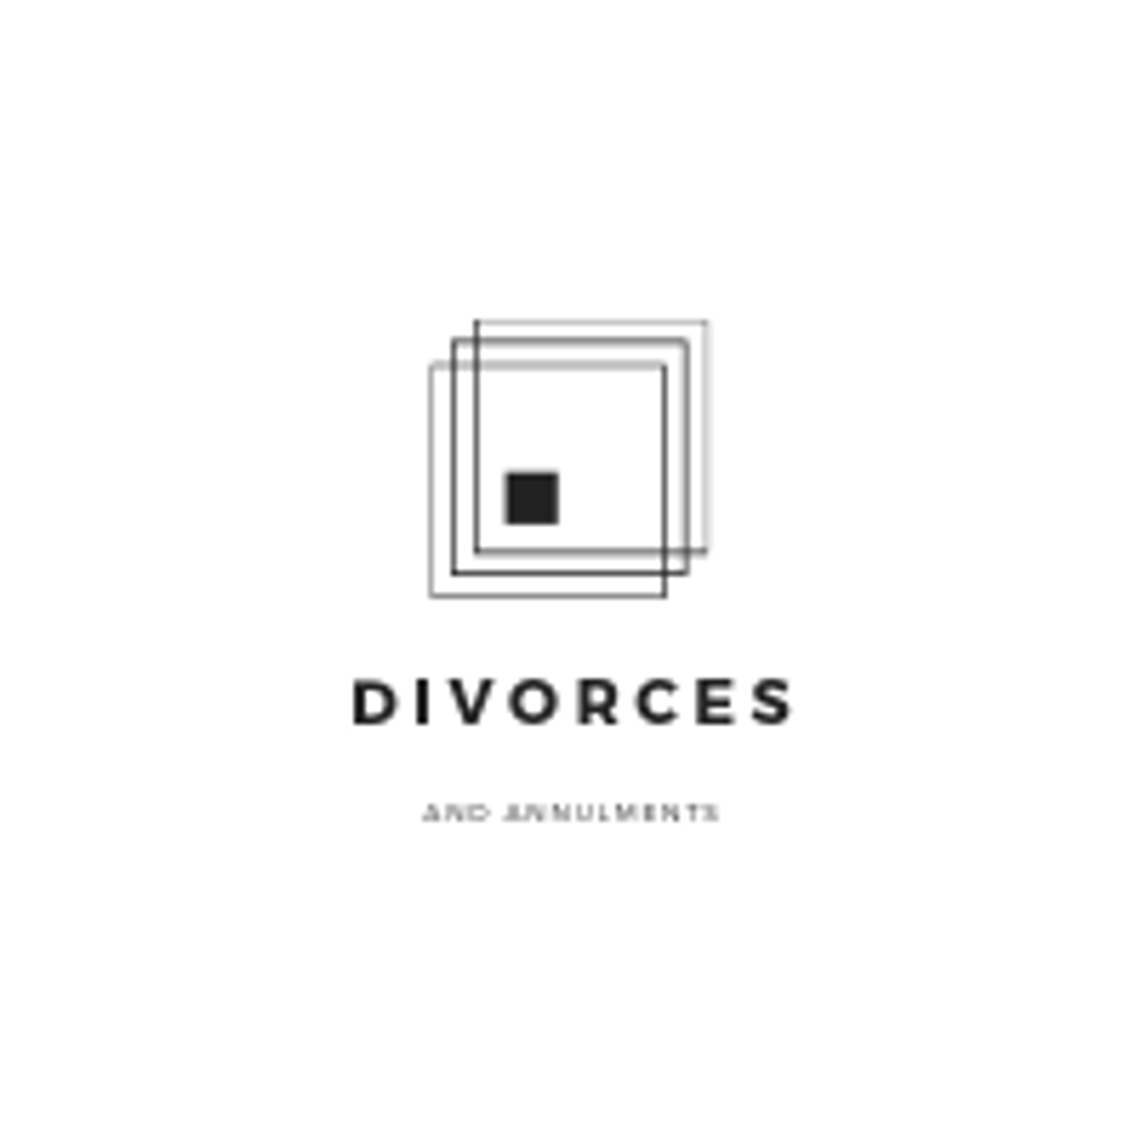 Divorces -- December 2019